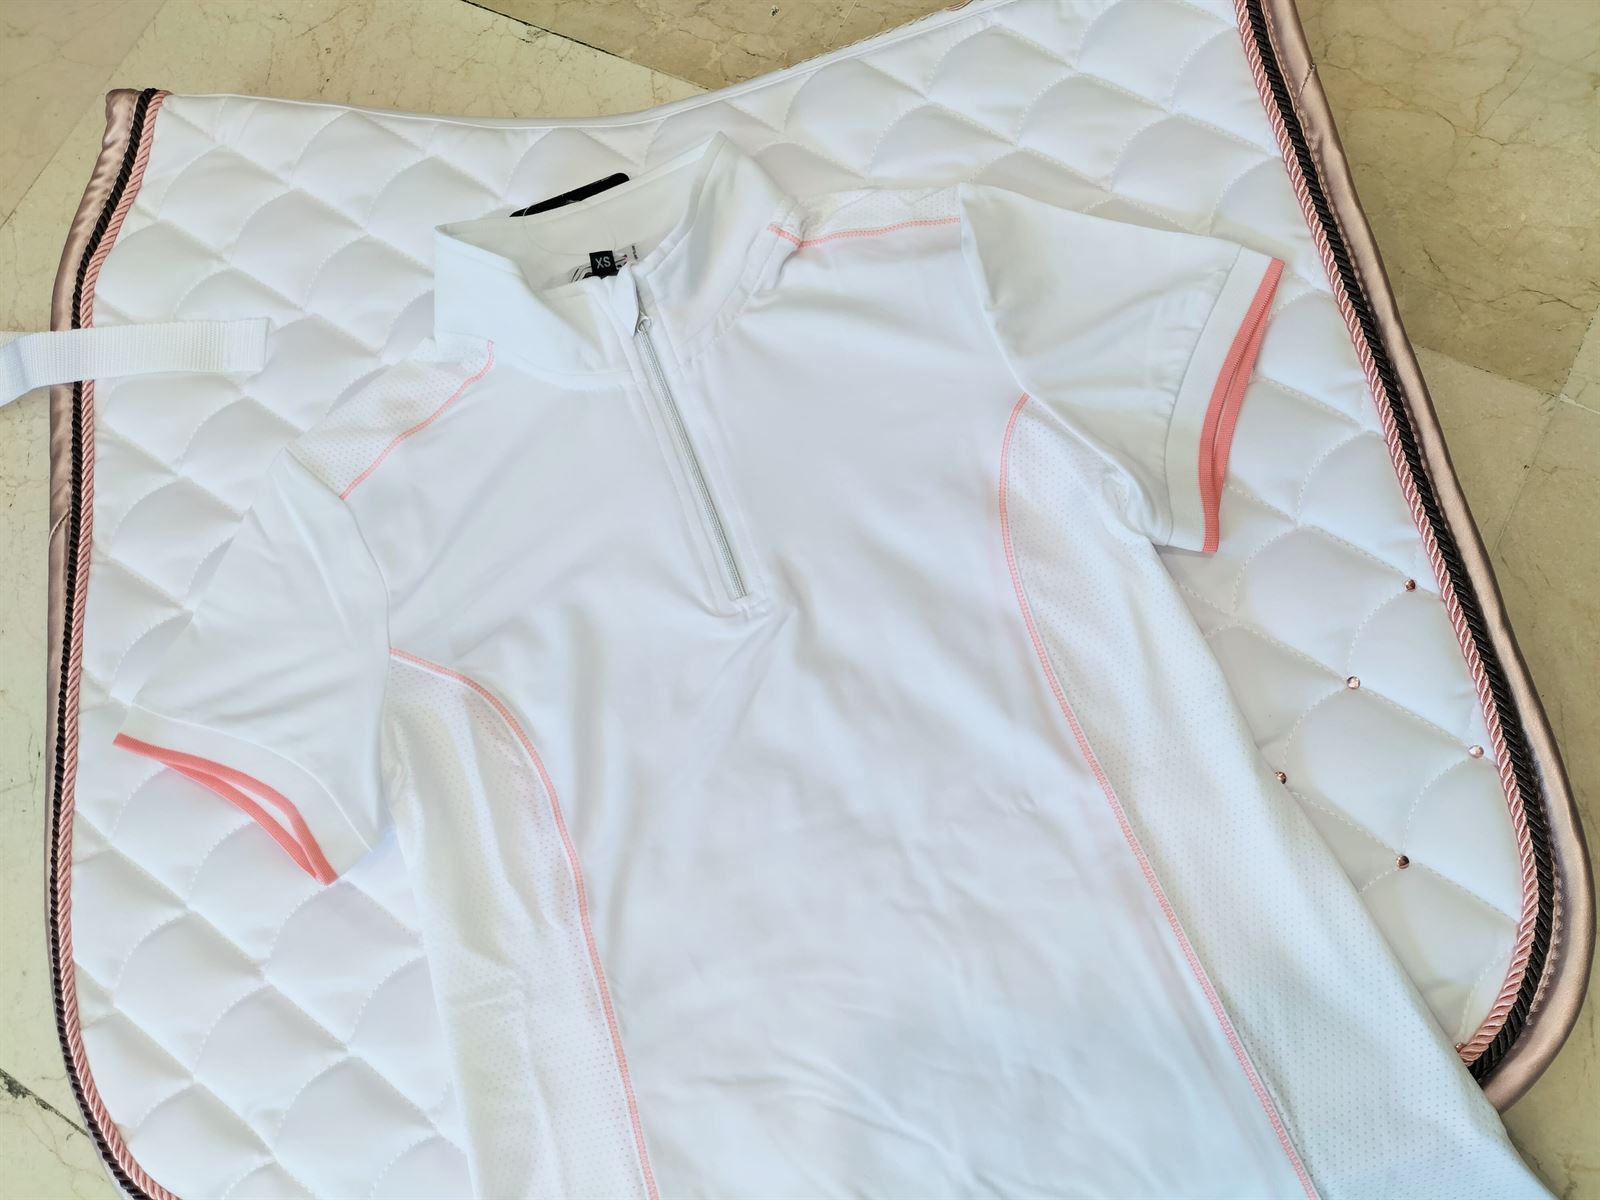 Polo concurso mujer HKM Sports Equipment Equilibrio Style color blanco con costura coral - Imagen 4